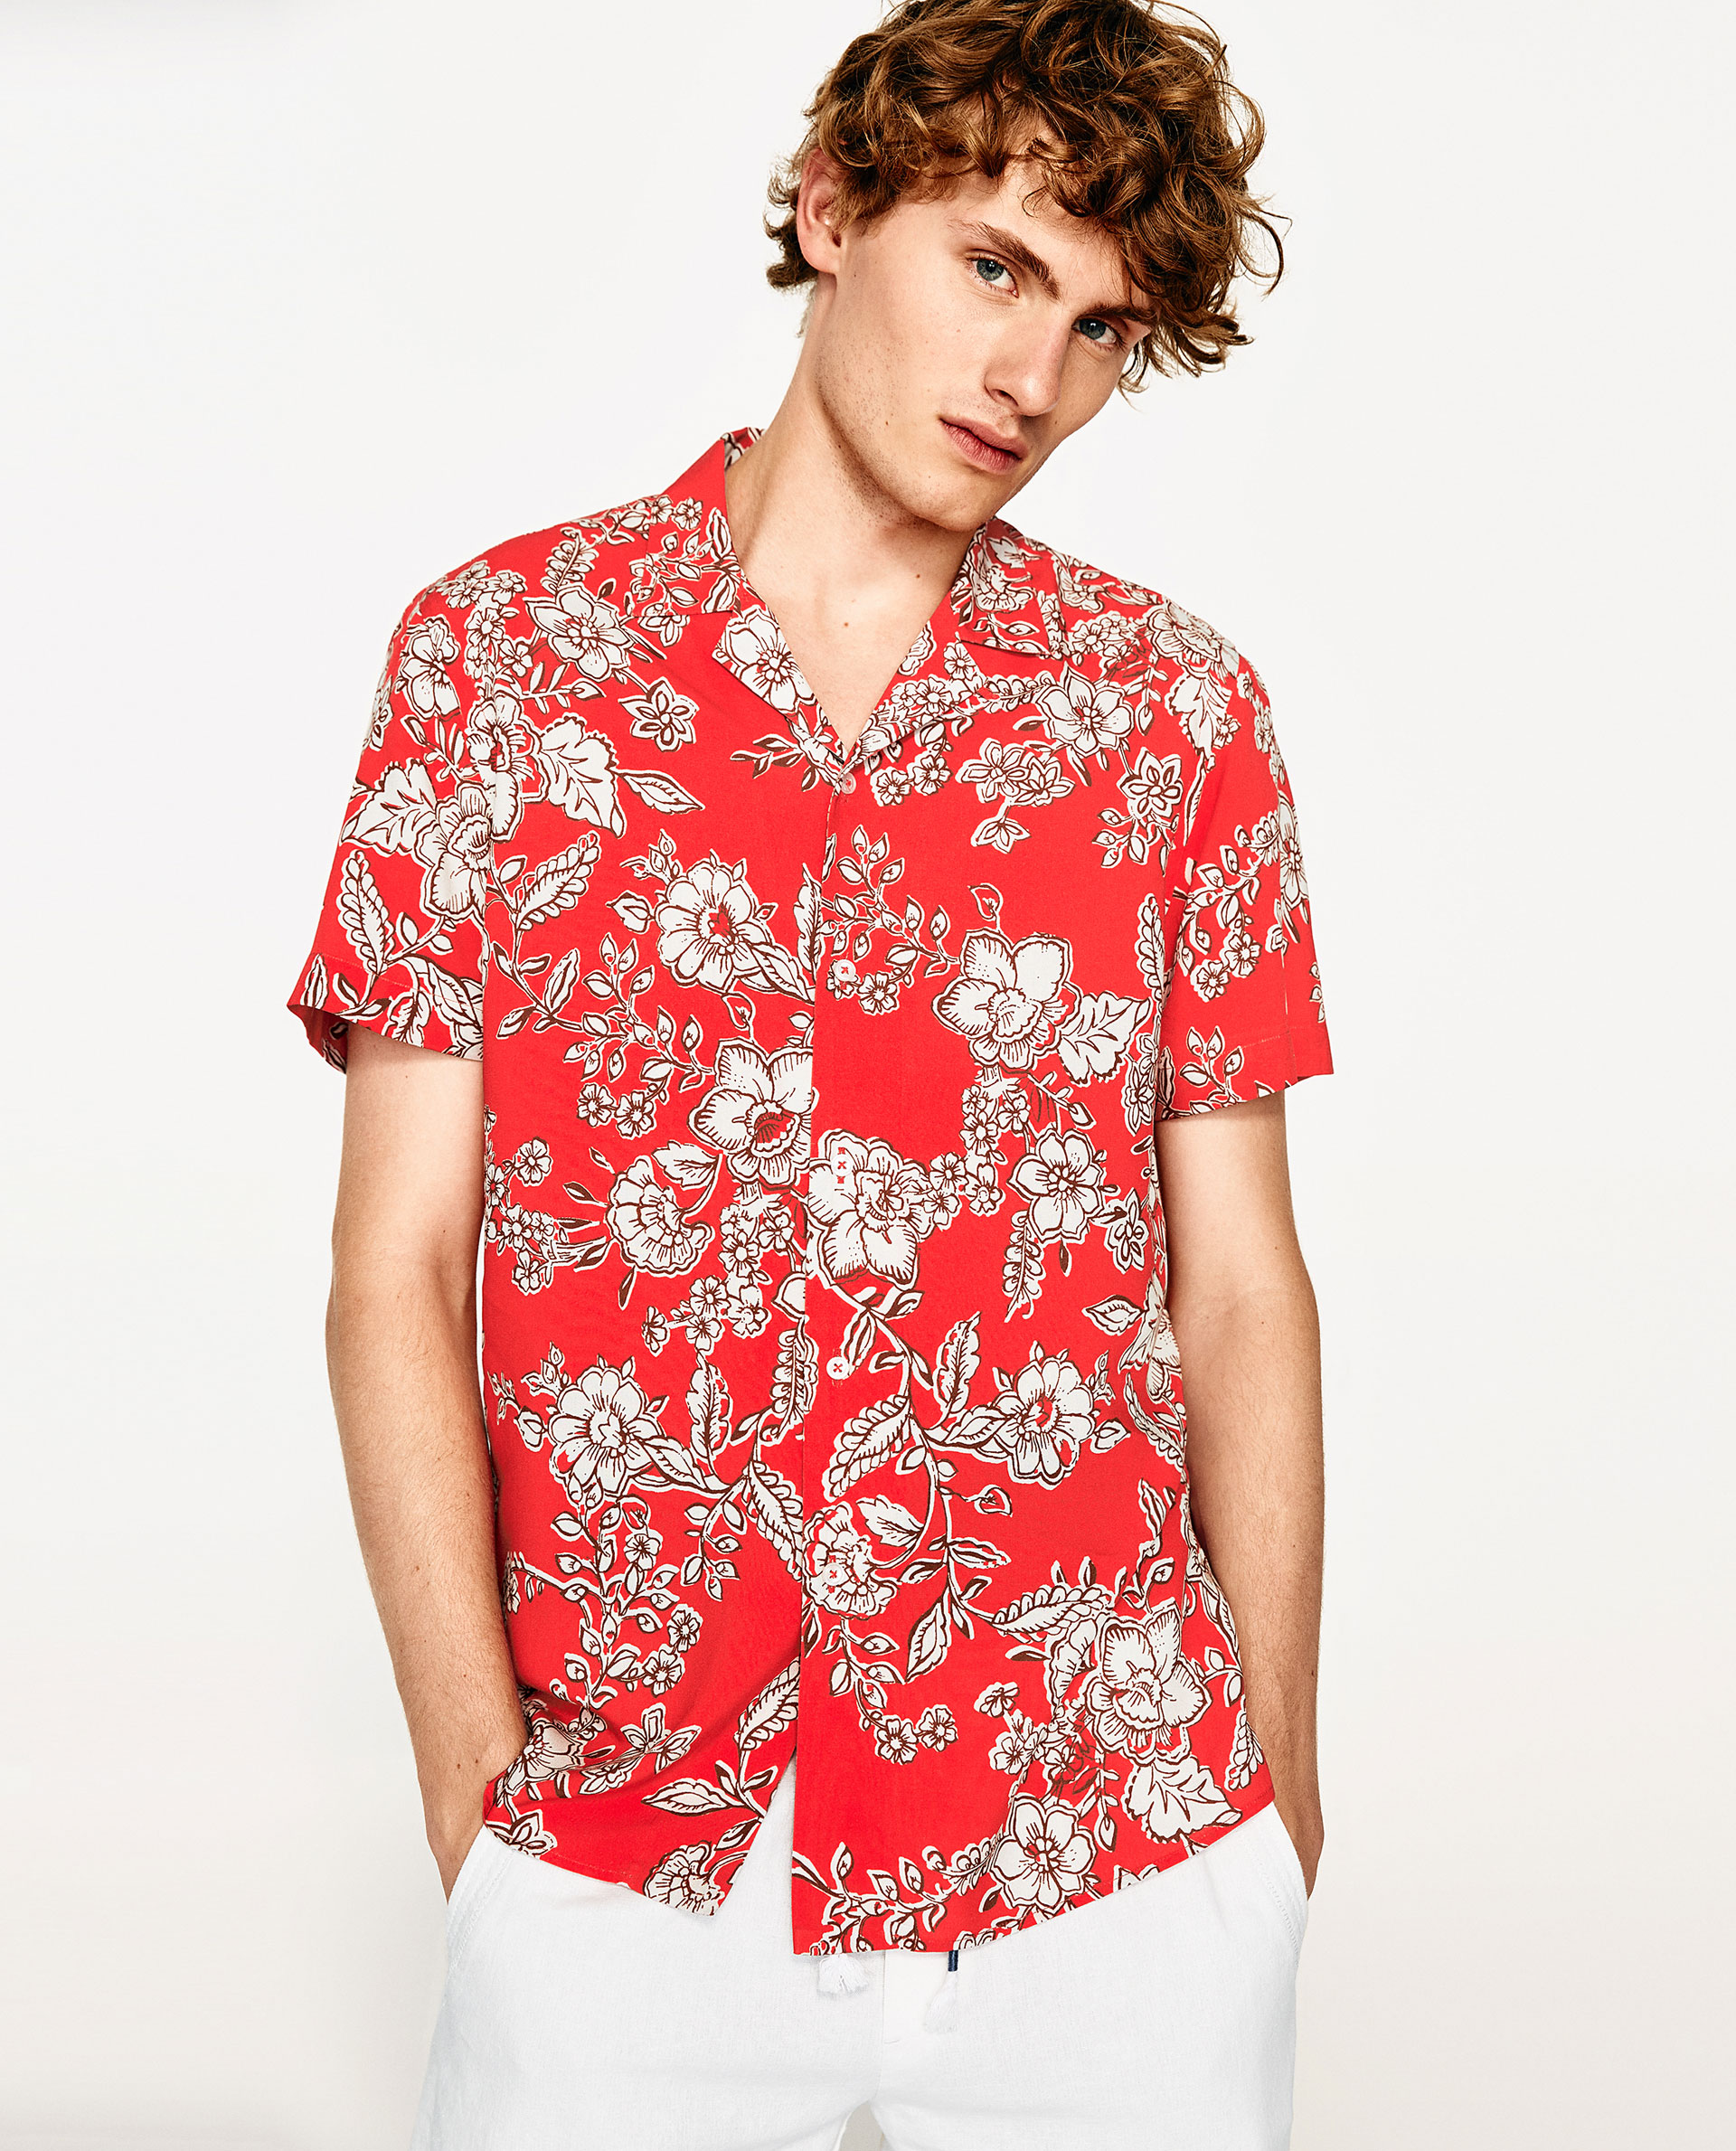 A floral shirt from Zara